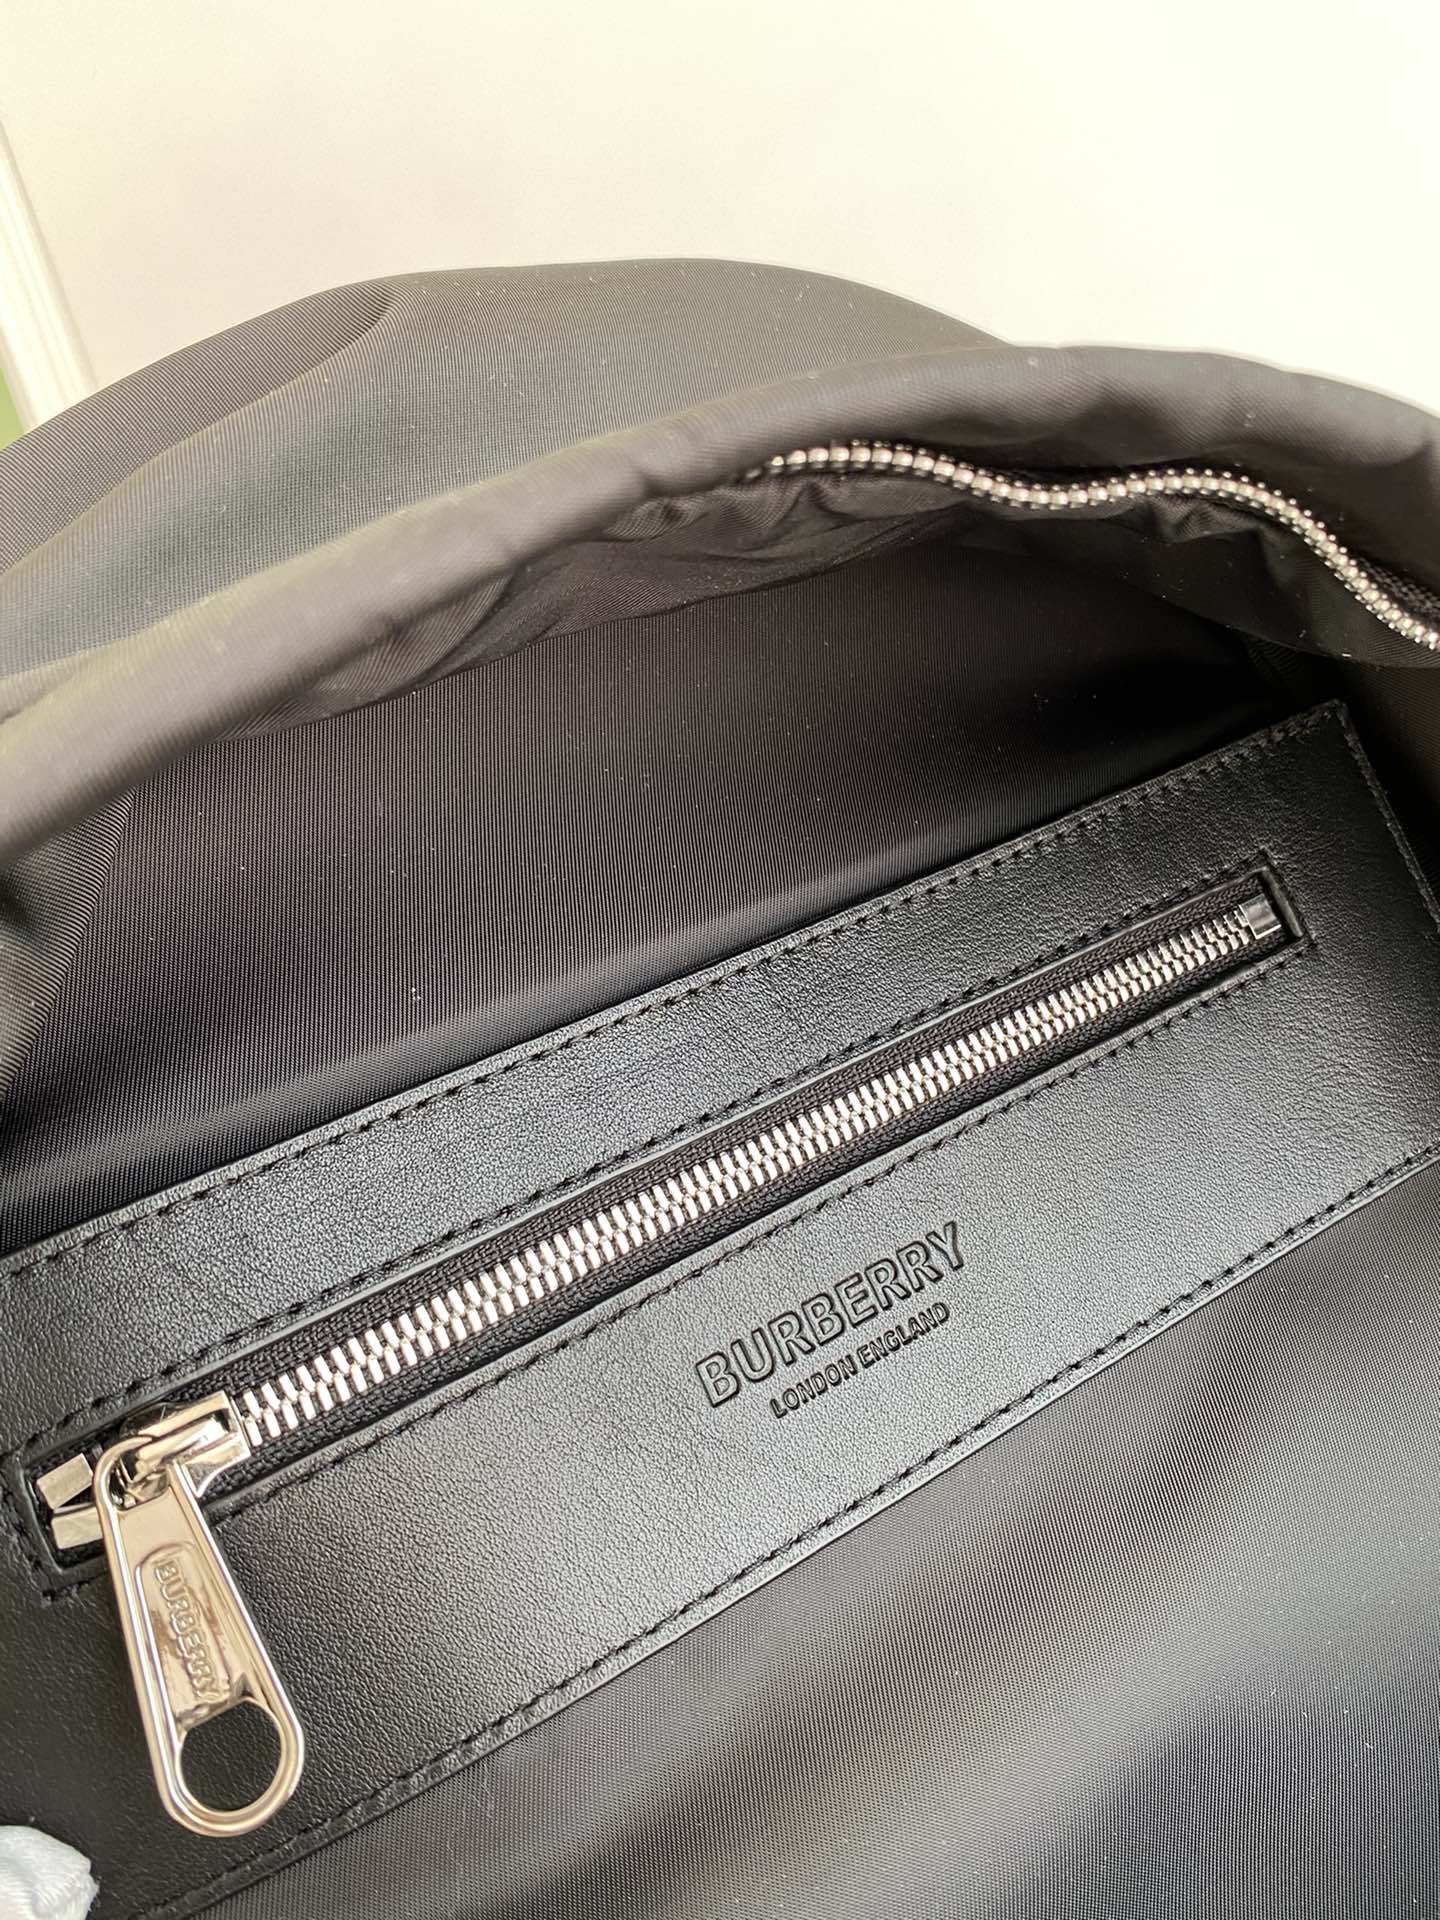 Pzbags Waterproof Nylon Backpack BP001B(Black)